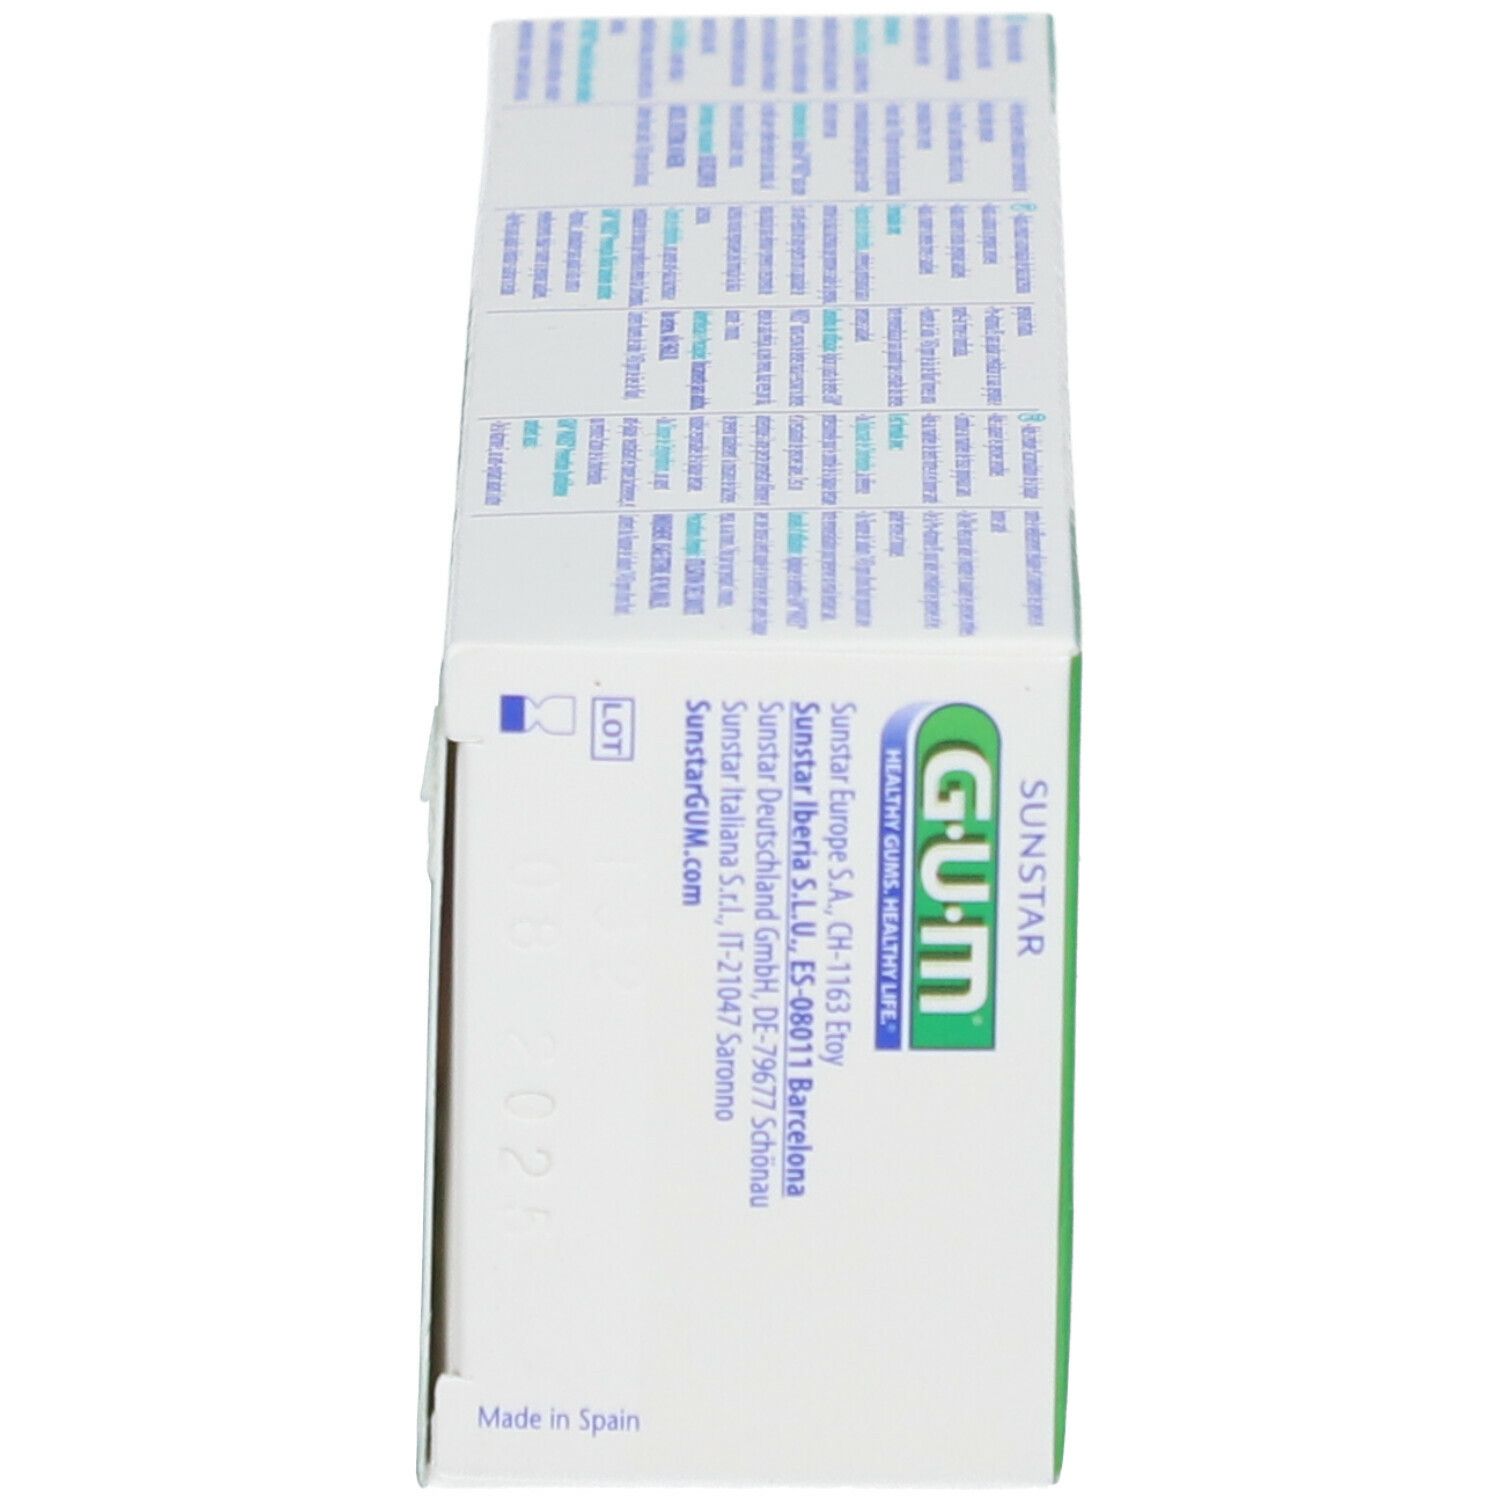 GUM® Paroex 0,06% Dentifrice